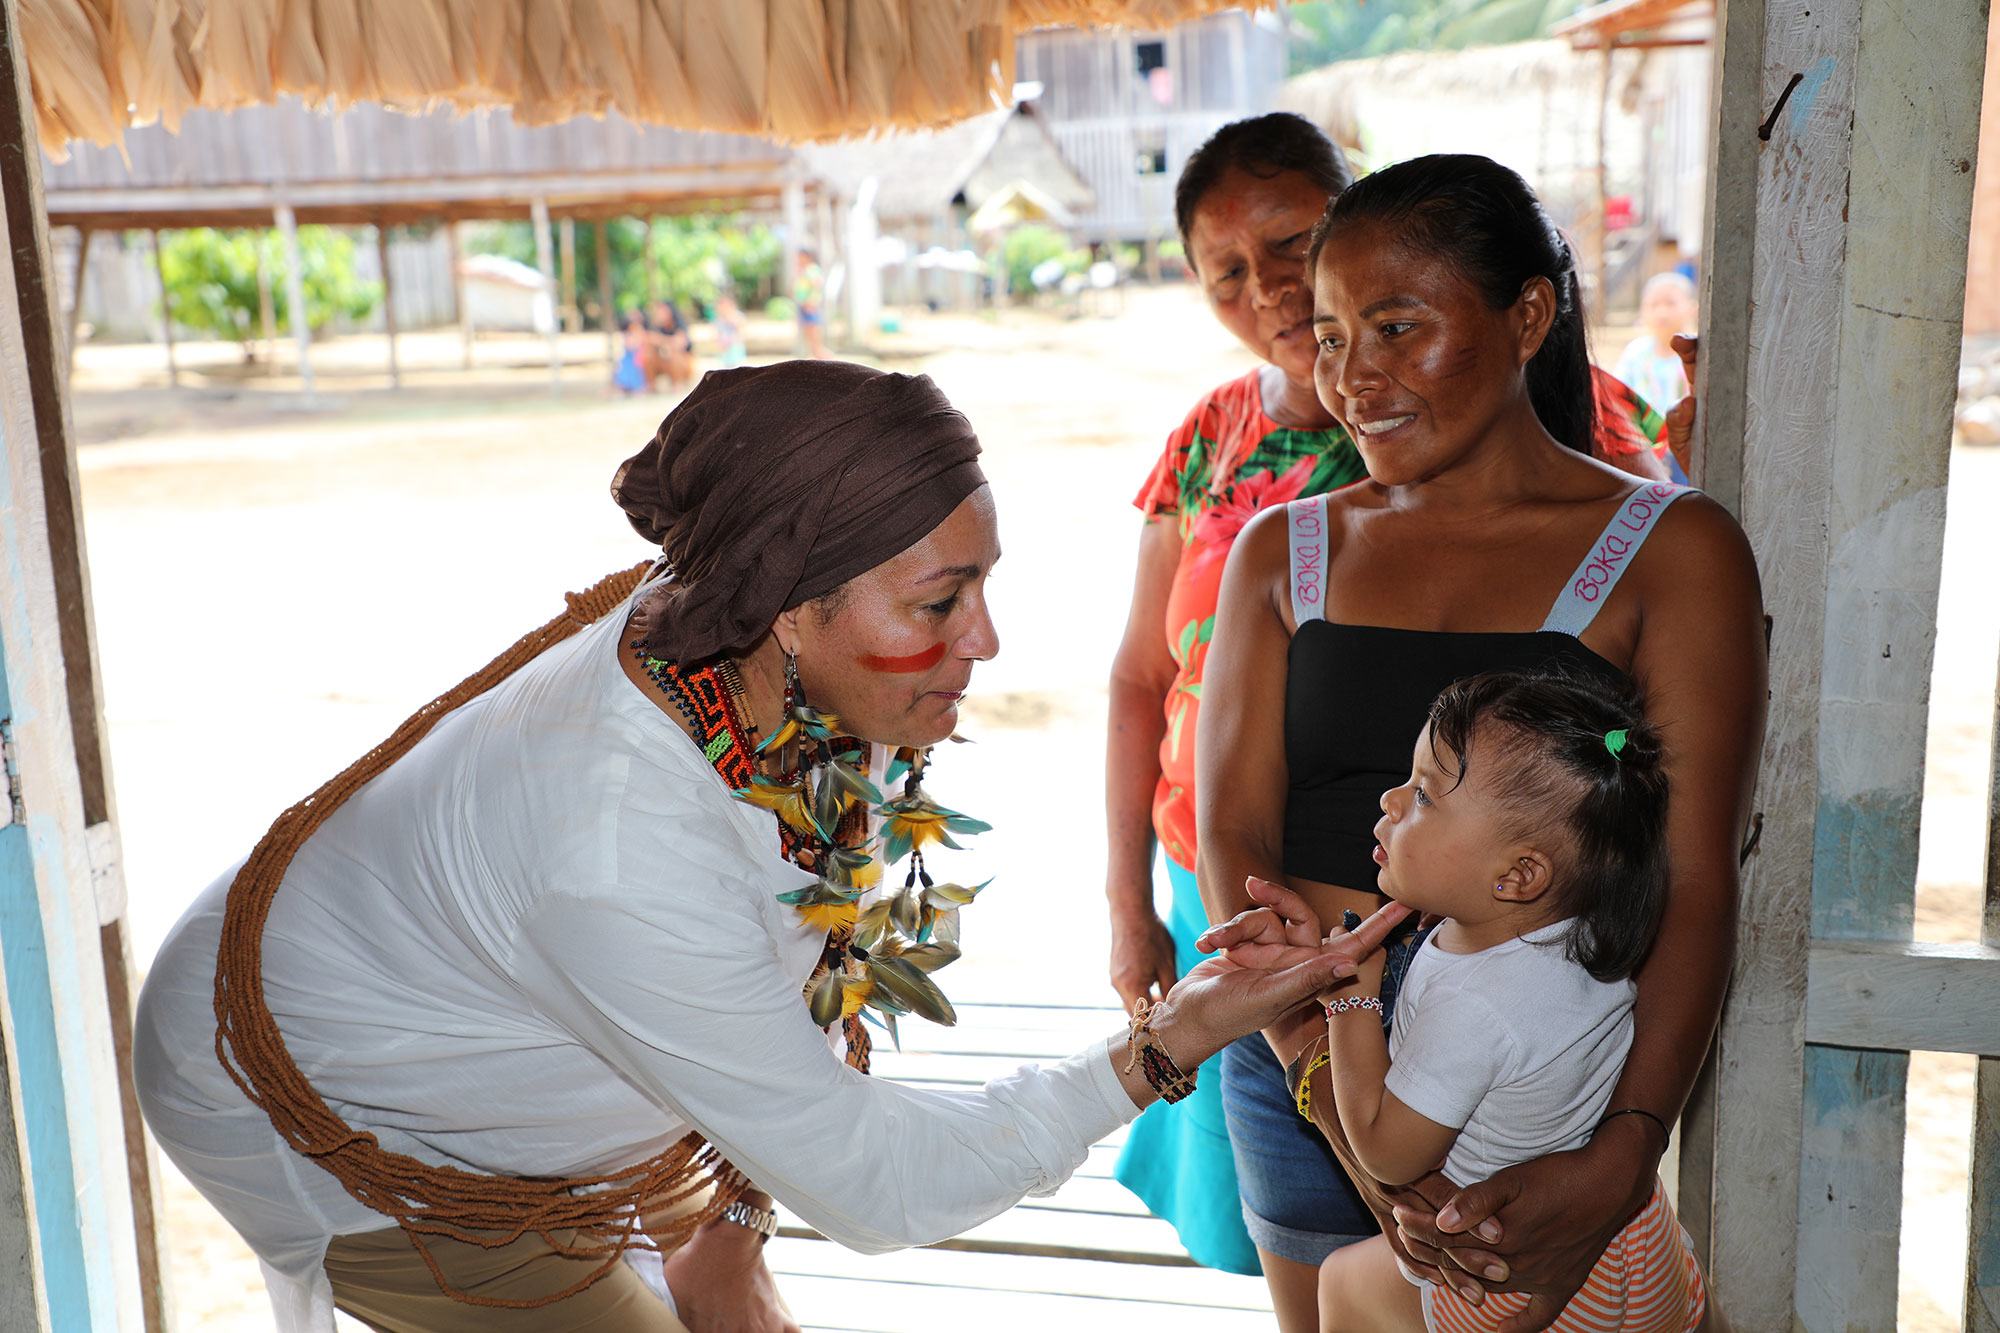 نائبة الأمين العام للأمم المتحدة، أمينة محمد أثناء لقائها بعائلة من سكان مابويرا الأصليين في منطقة الأمازون البرازيلية